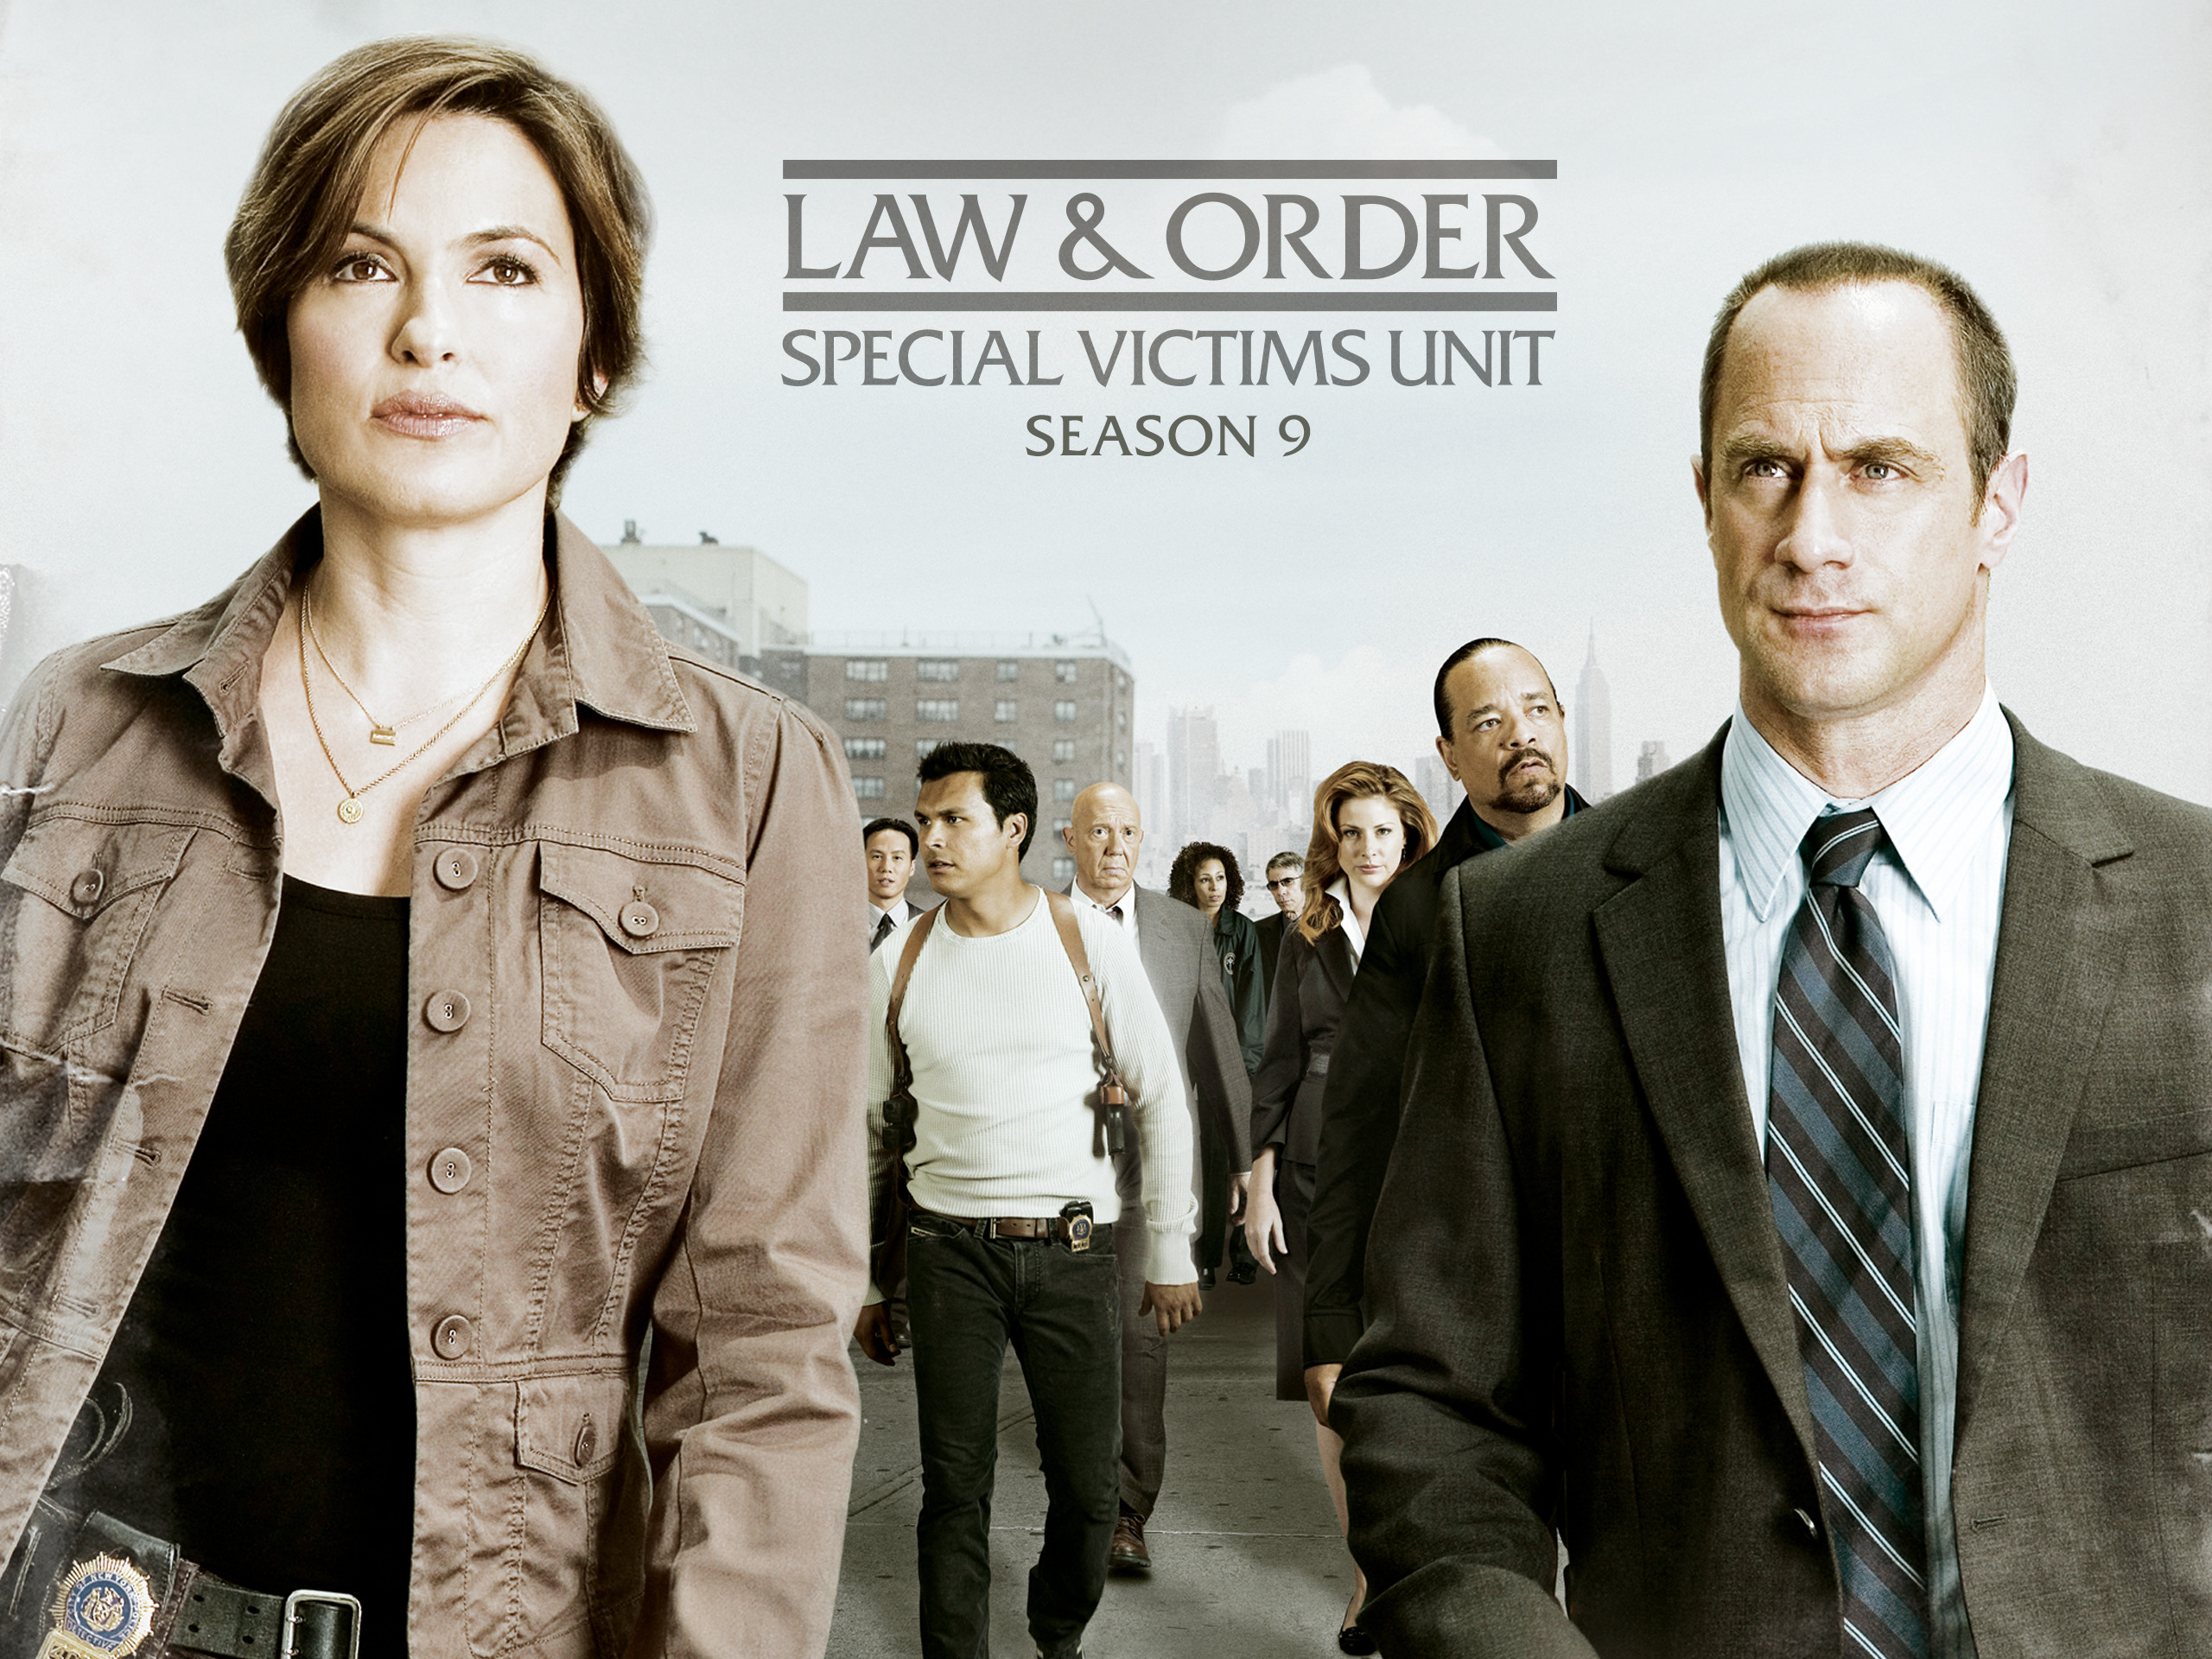 Luật Pháp Và Trật Tự: Nạn Nhân Đặc Biệt (Phần 9) Law & Order: Special Victims Unit (Season 9)